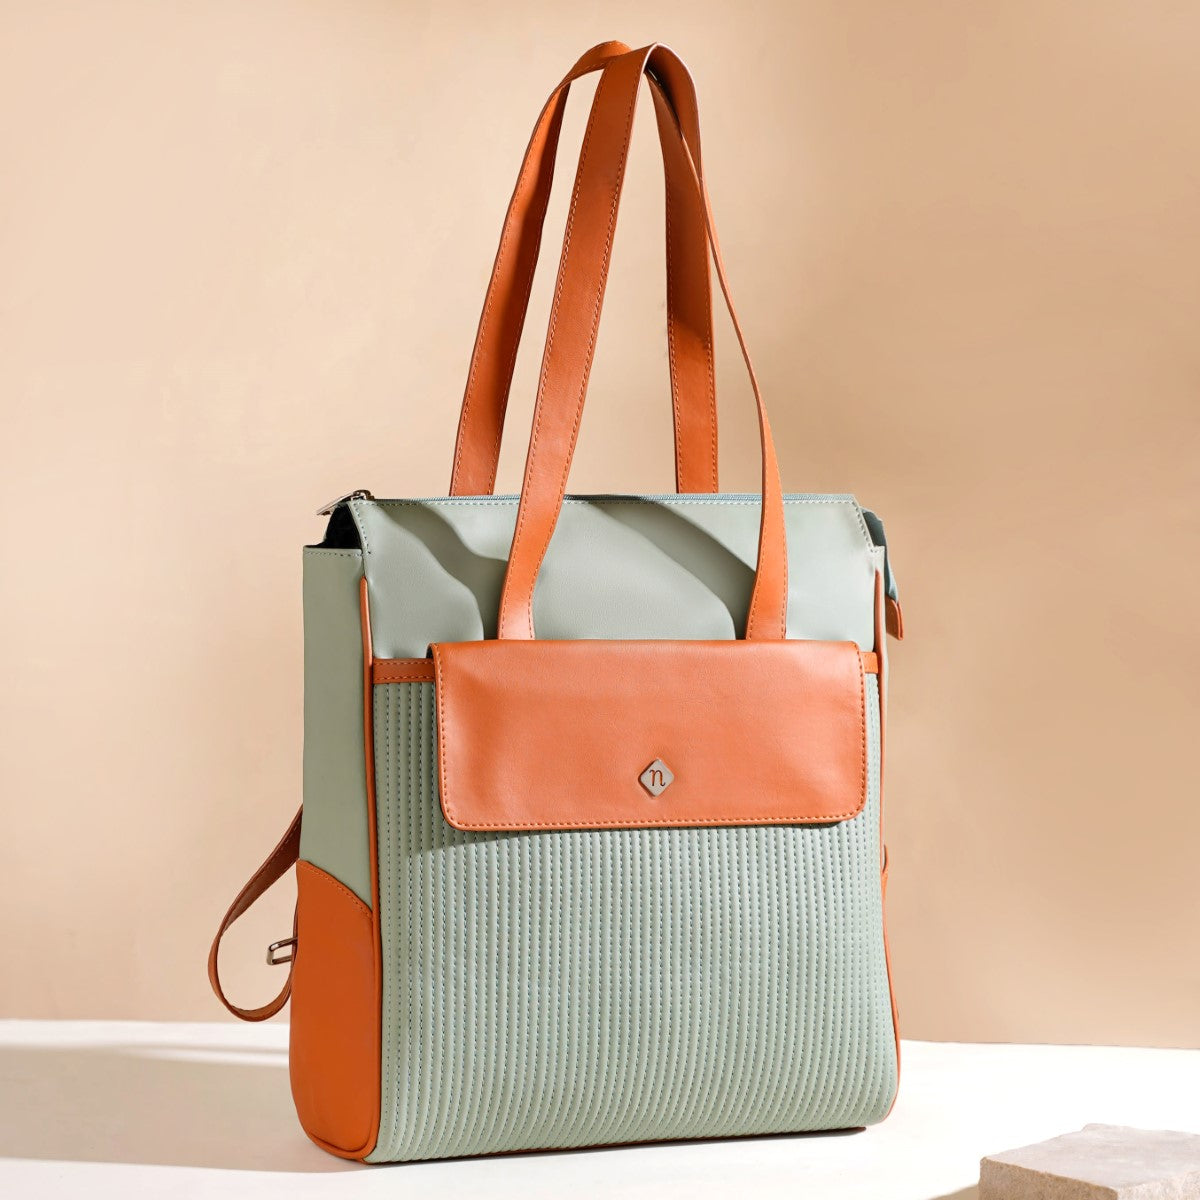 Buy Best Women Backpack Handbags Online in India